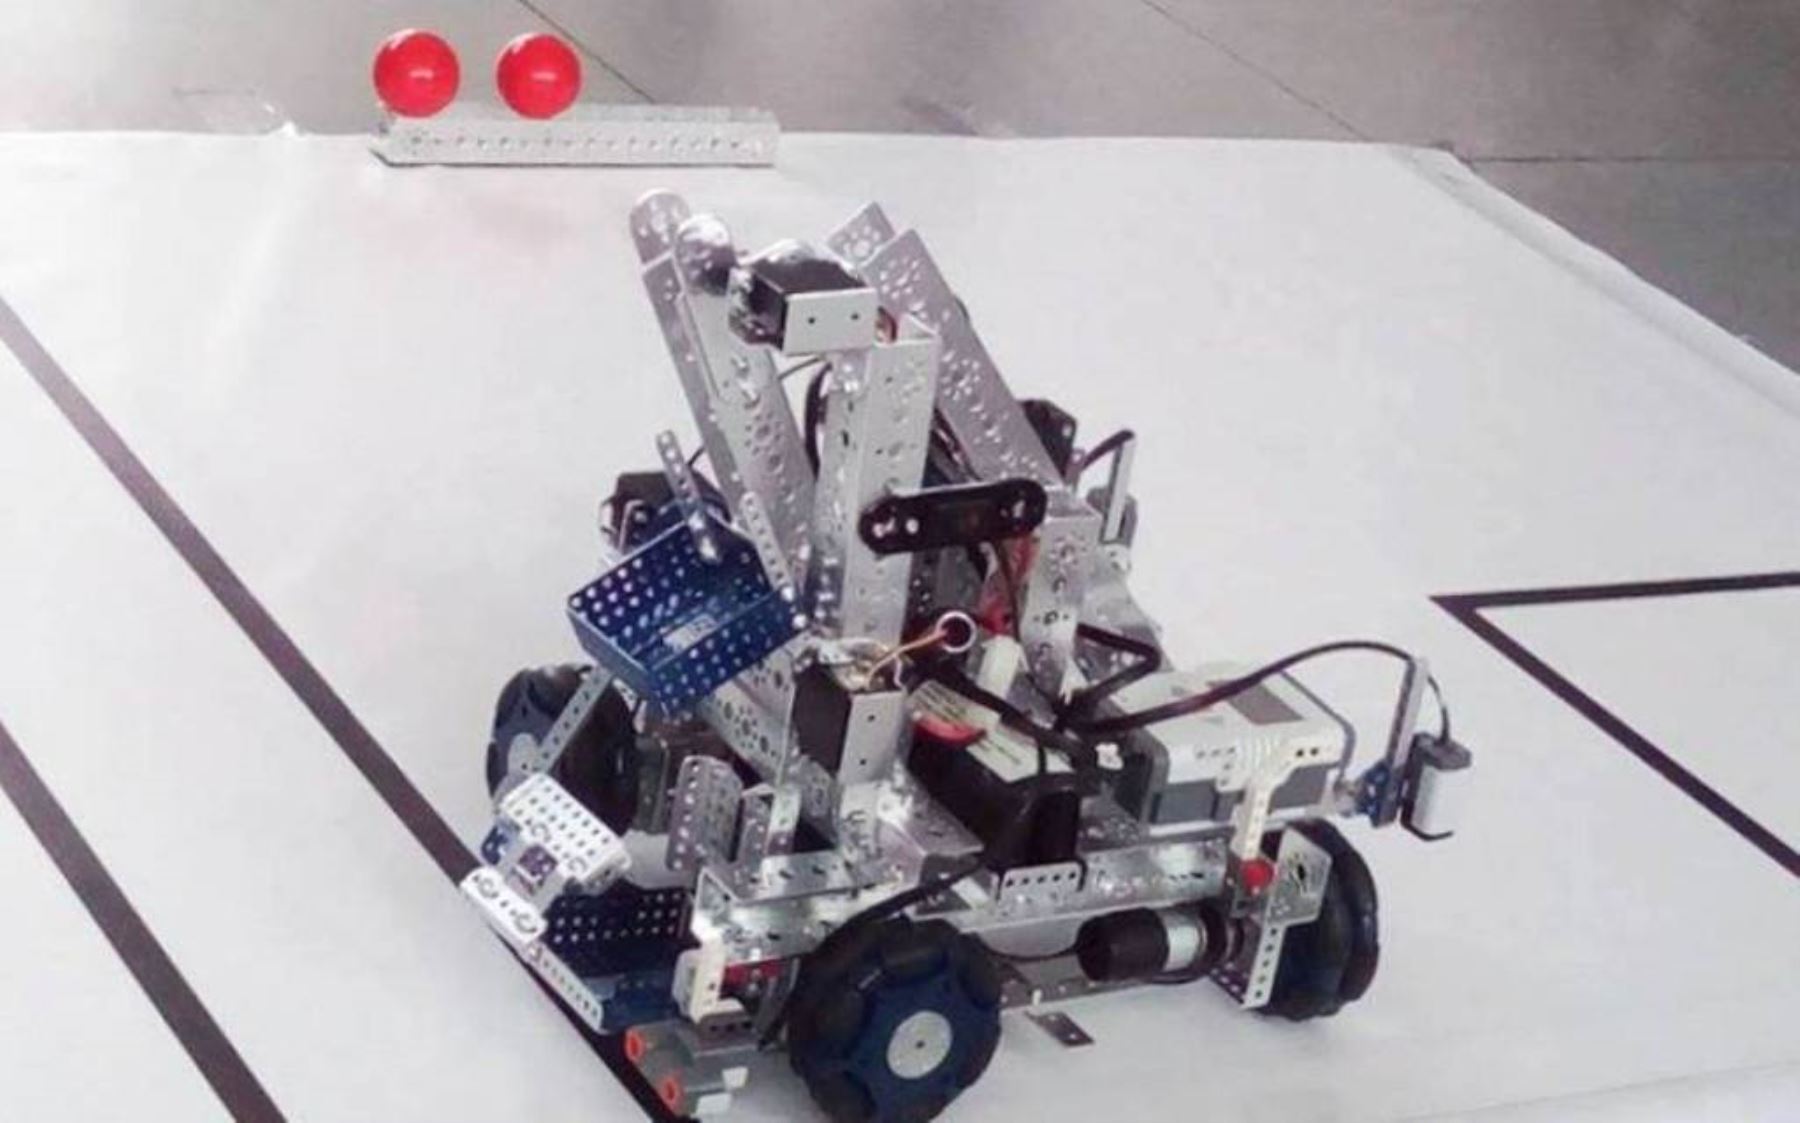 Robot "Uniecibot" diseñado en Universidad de Cajamarca, el cual participará en la Olimpiada Mundial de Robótica, a realizarse en Qatar.